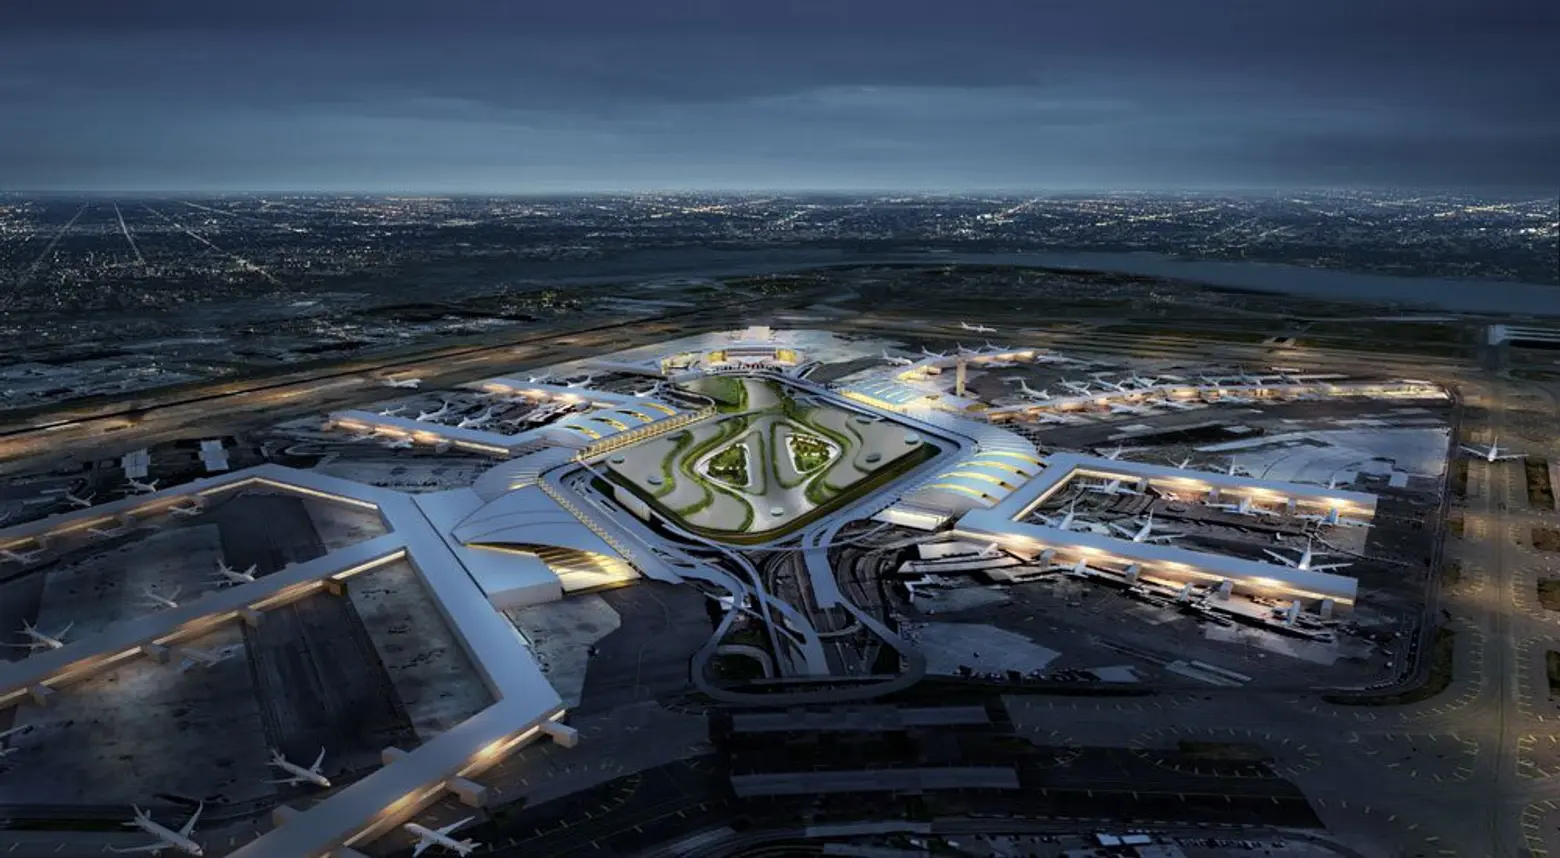 REVEALED: $10 billion overhaul announced for JFK Airport – see new renderings